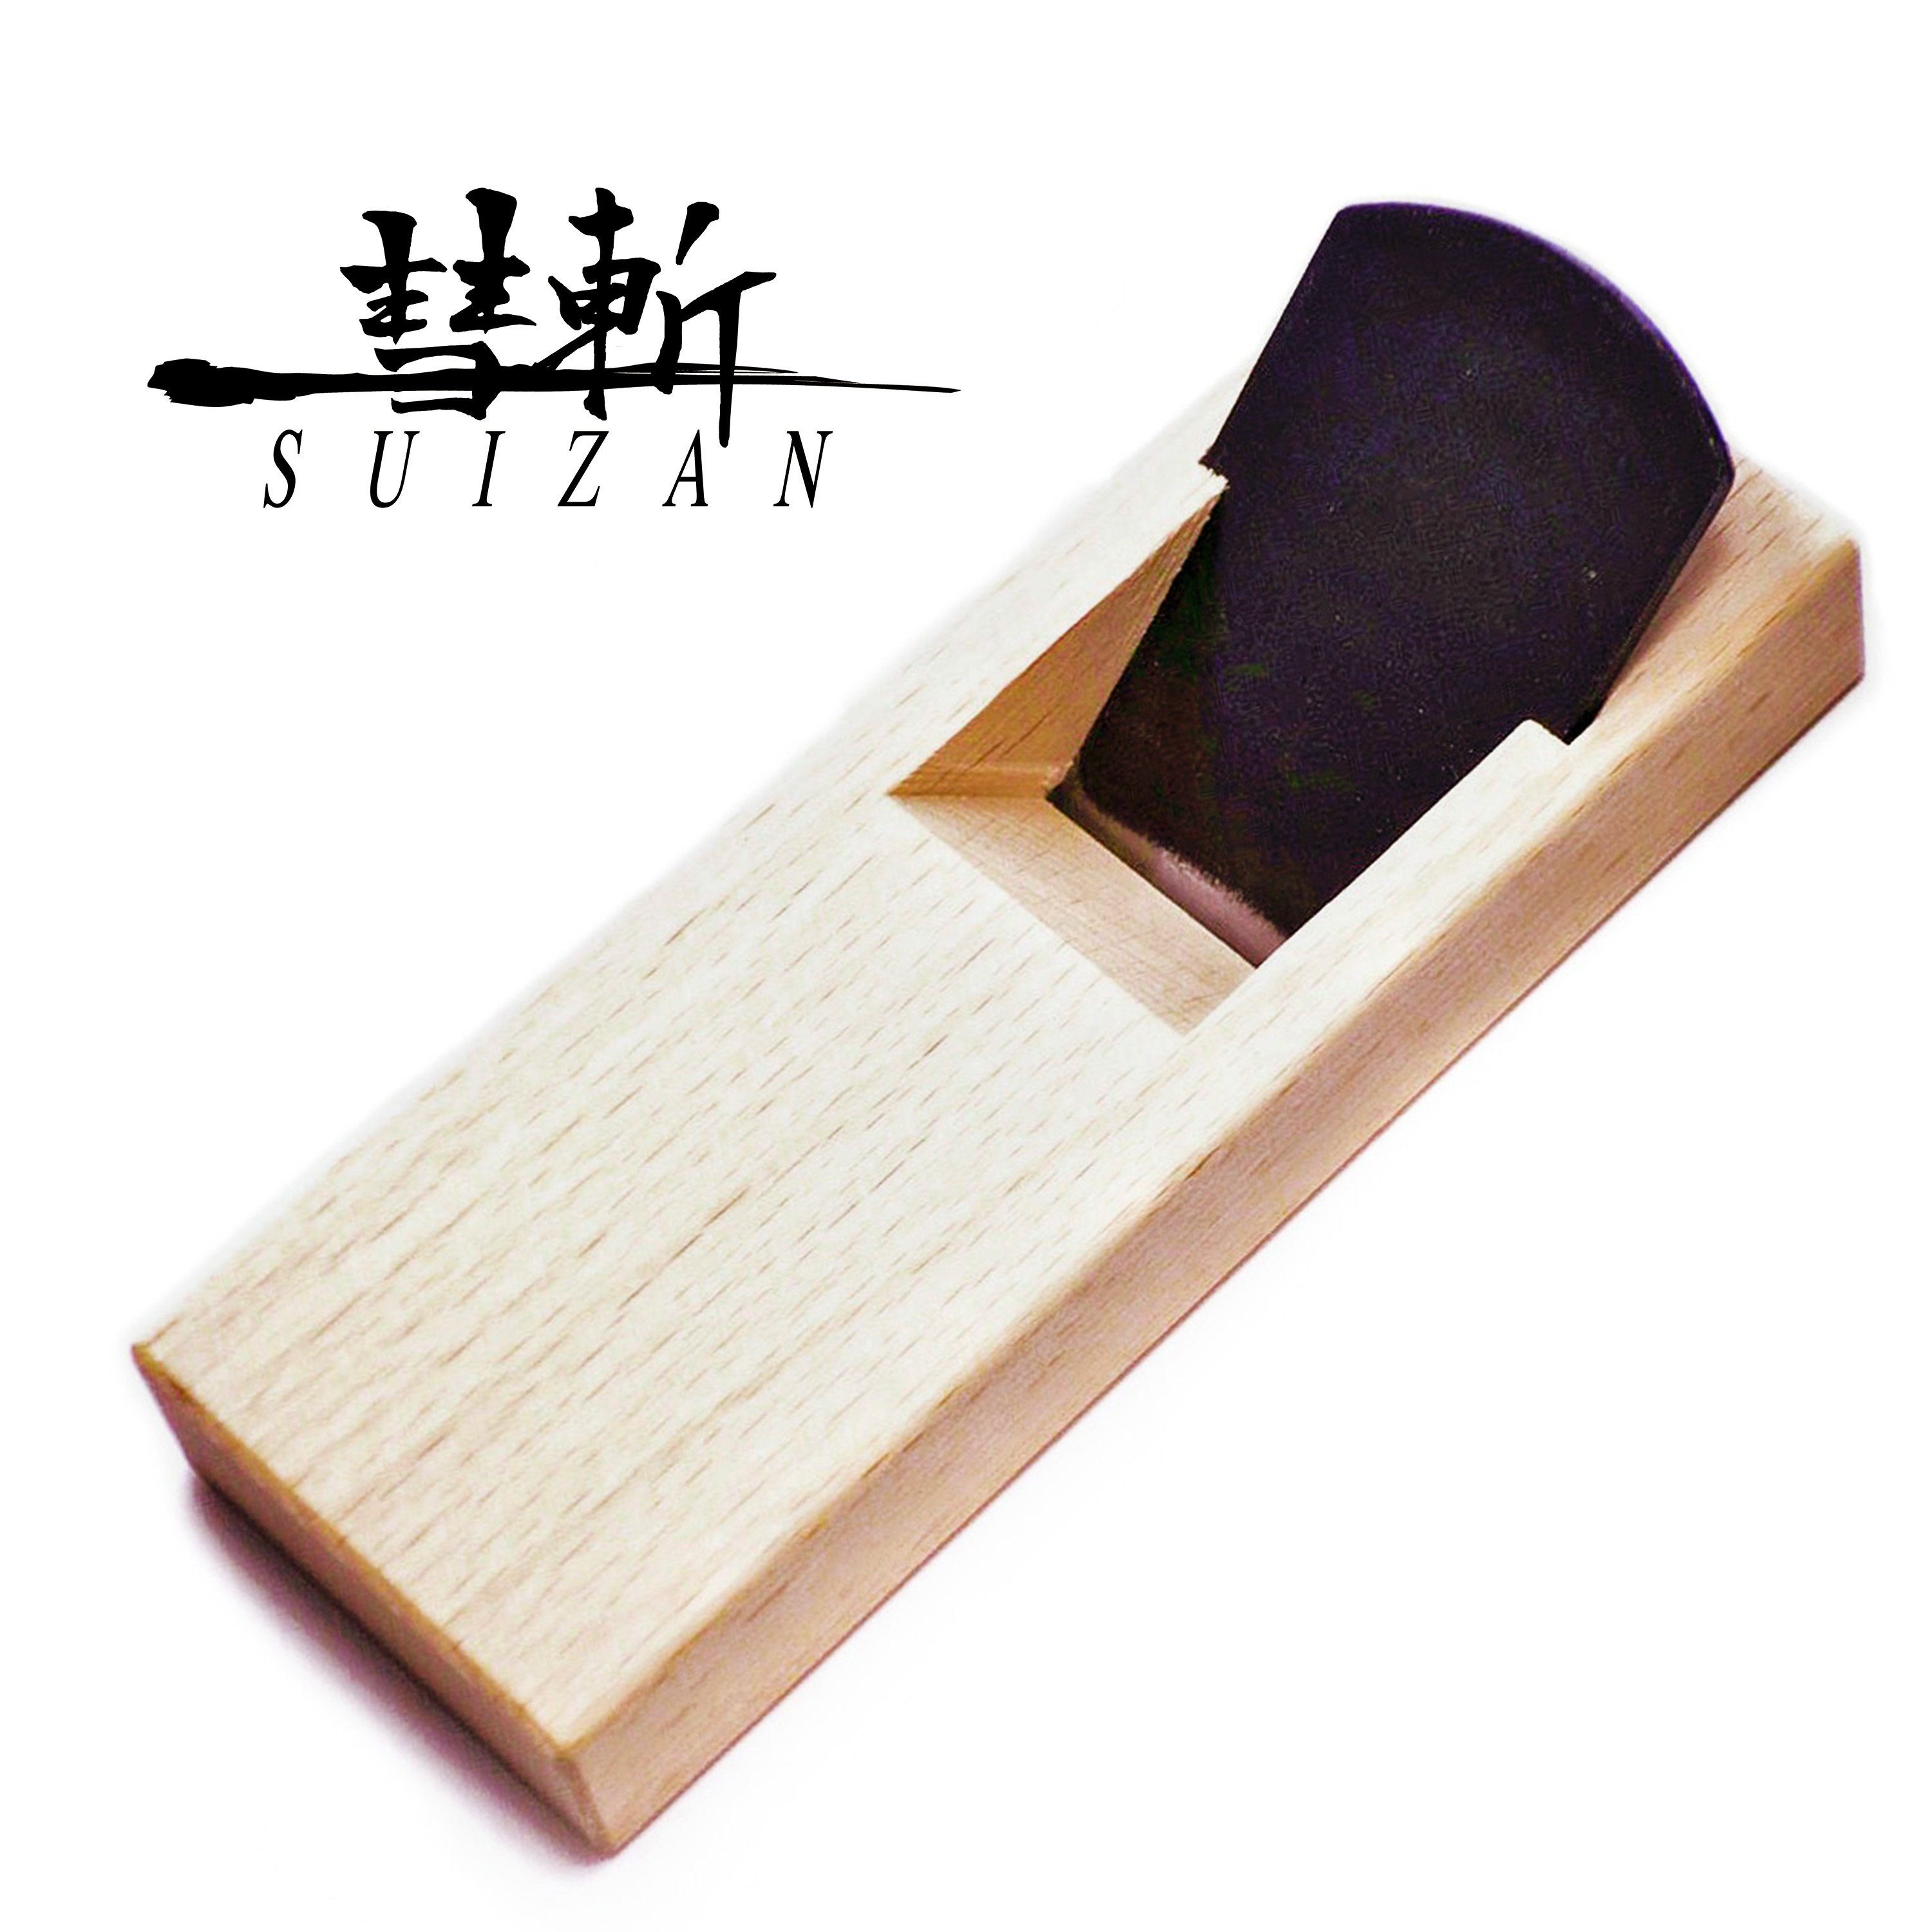 SUIZAN Schichthobel Made in Japan japanischer Holzblockhobel KANNA 42 mm Handhobel